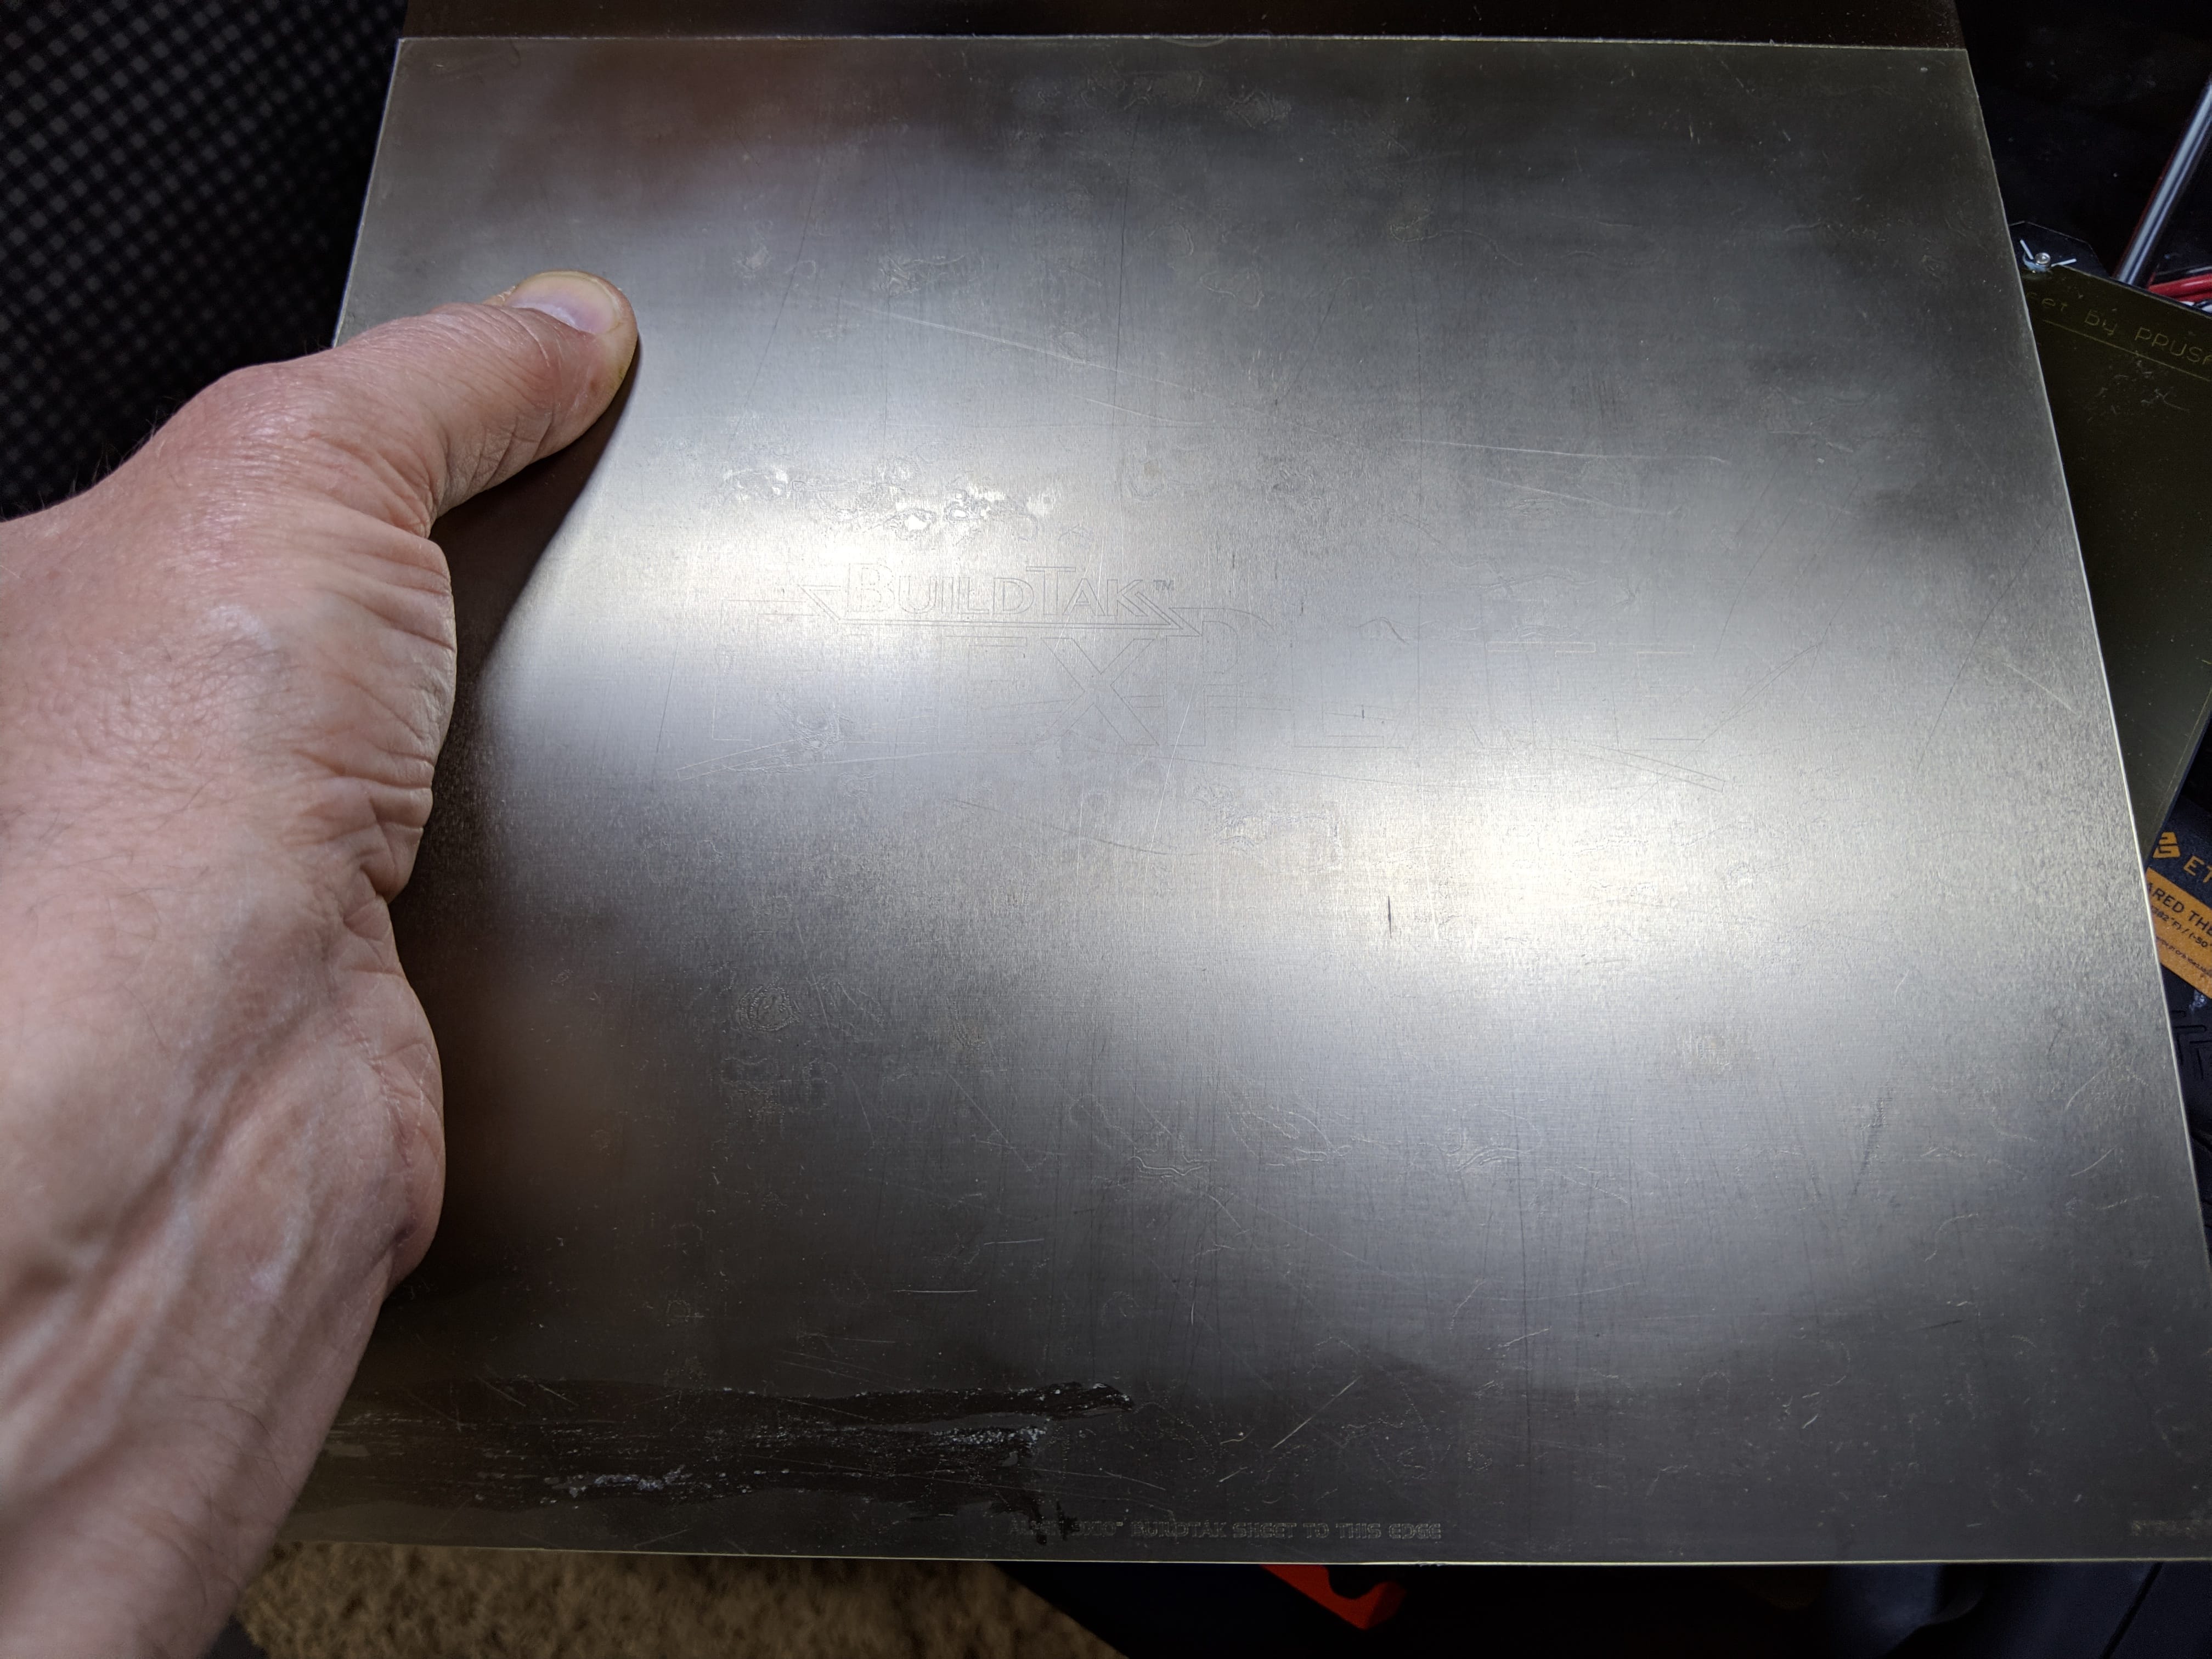 BuildTak spring steel sheet with BuildTak PEI surface